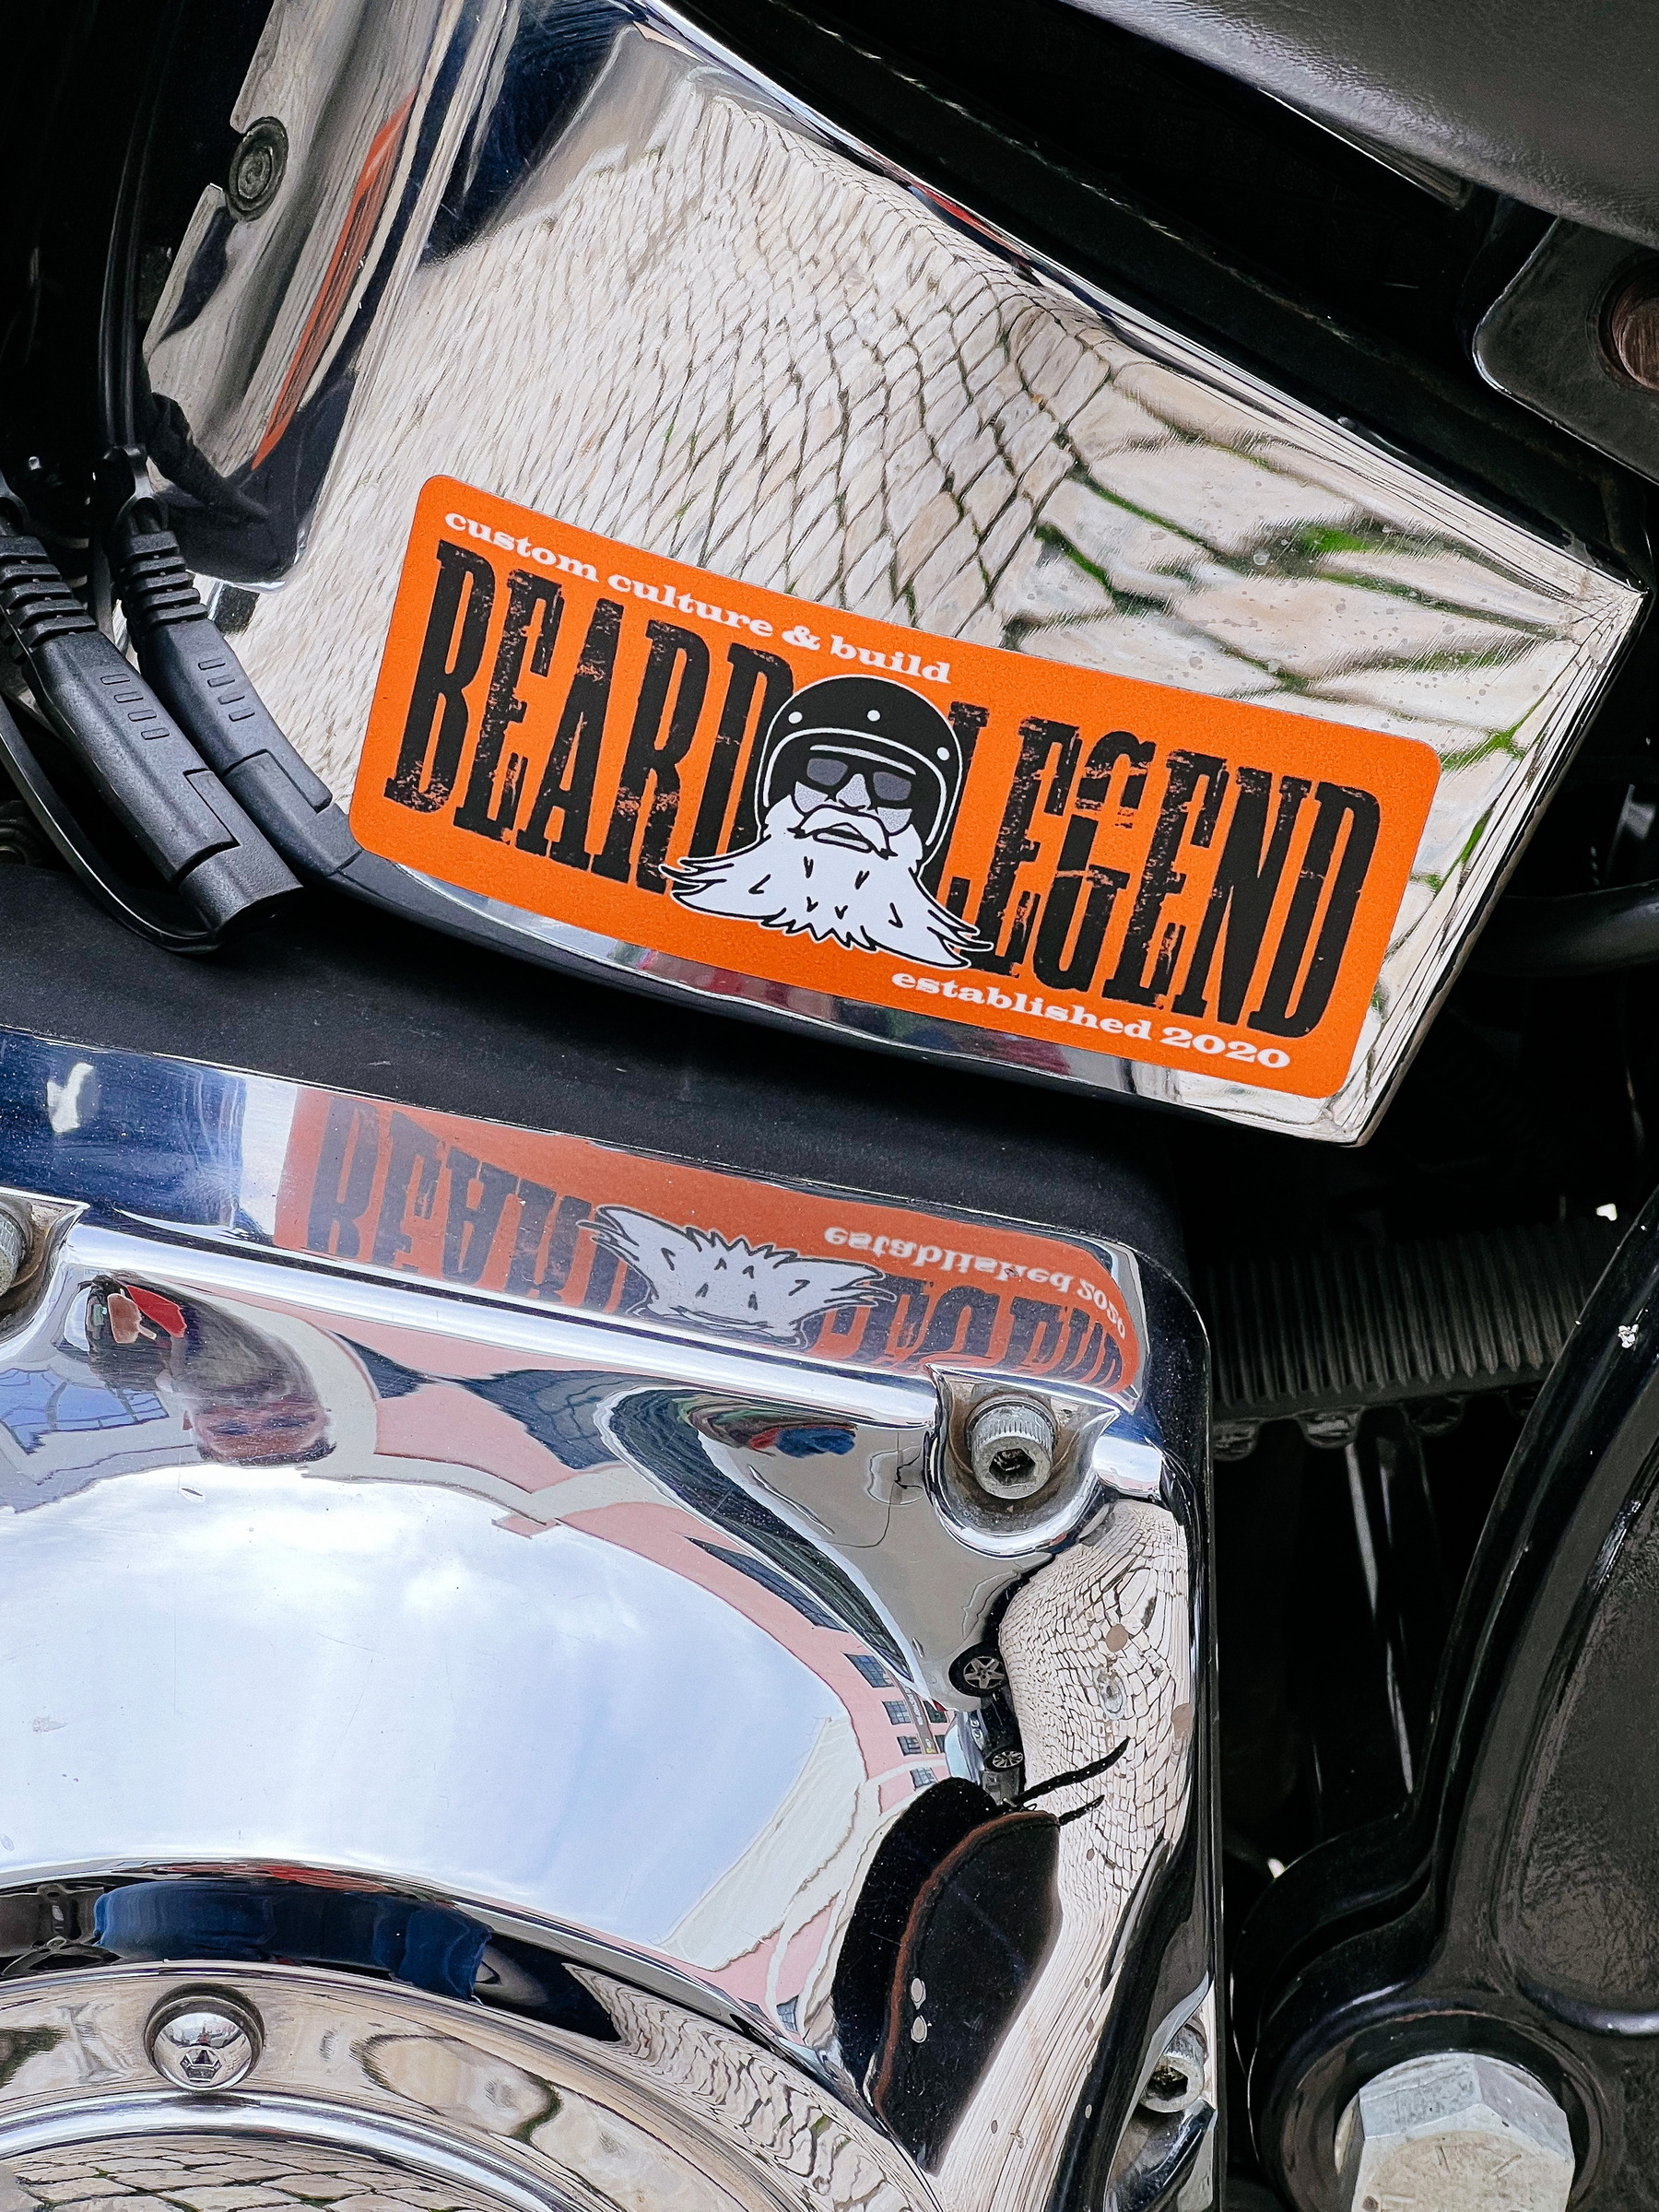 Sticker on a motorcycle engine, “Beard Legend” written on it, with a bearded man in a helmet